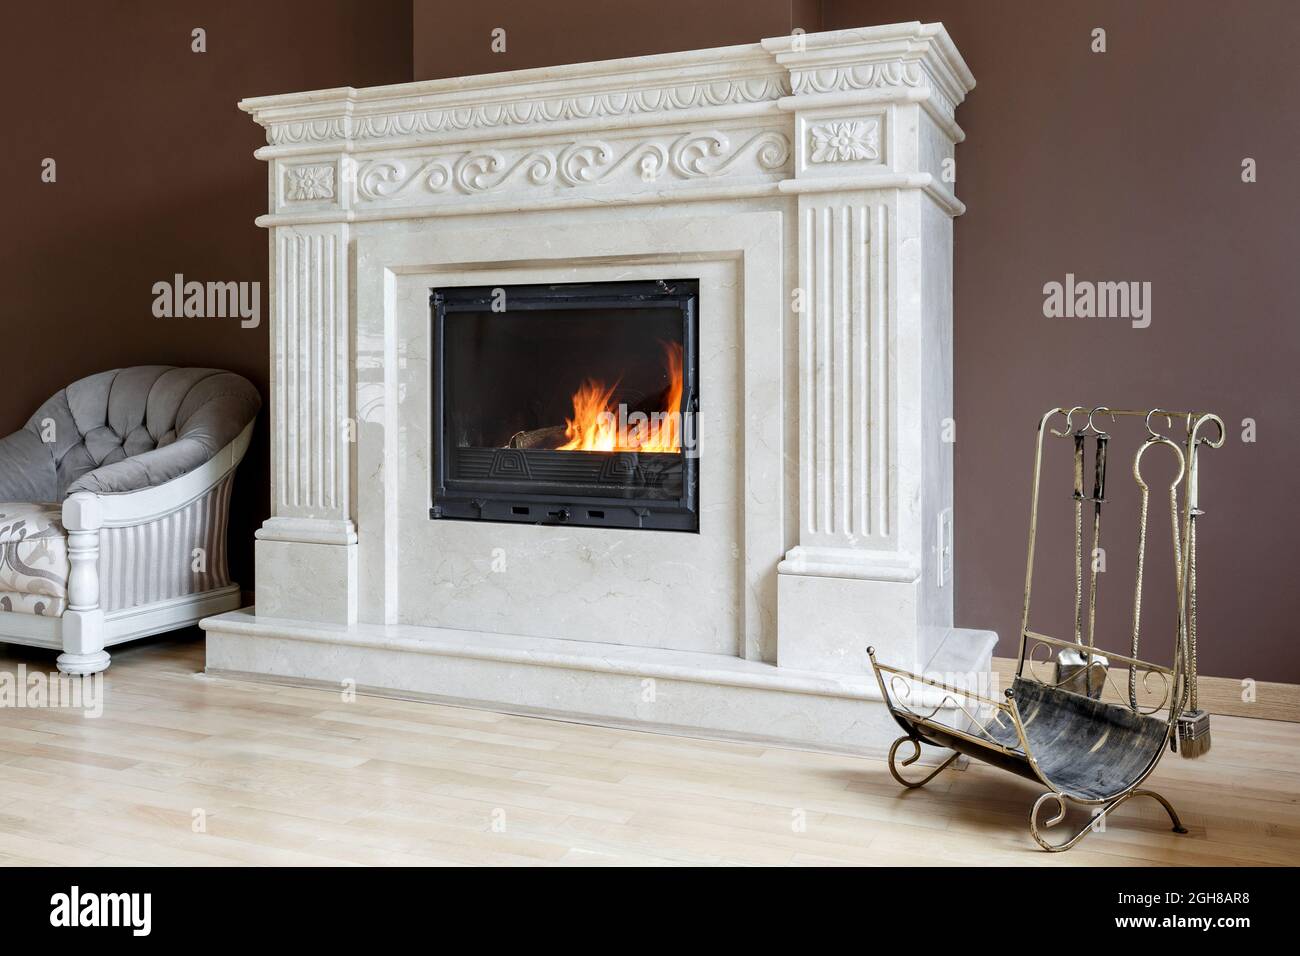 Cheminée en marbre blanc de style classique avec intérieur en bois. Concept de design intérieur Banque D'Images